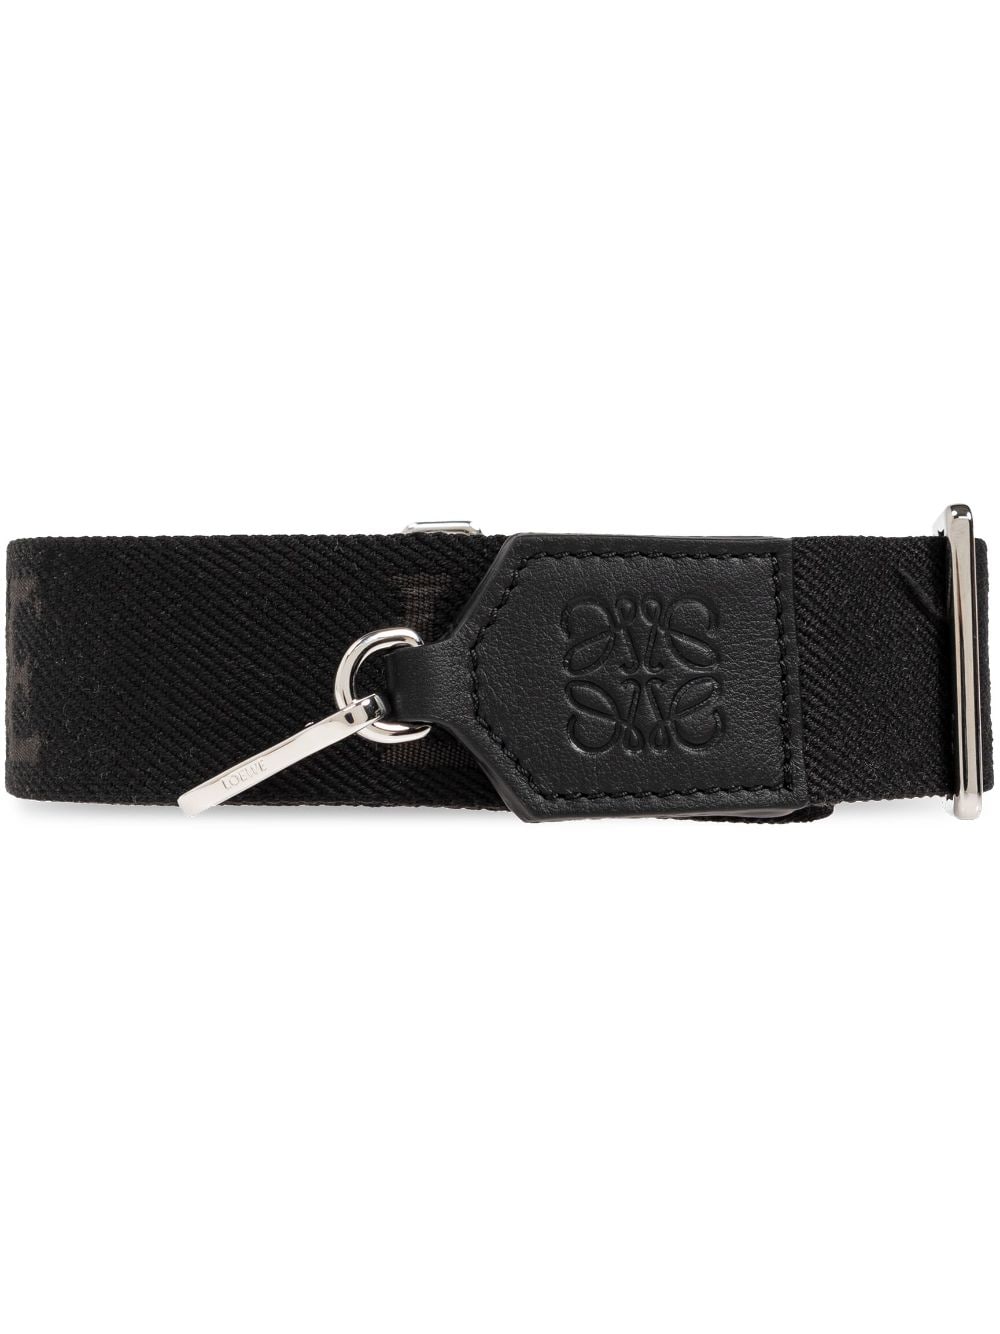 LOEWE logo-jacquard wool strap - Black von LOEWE